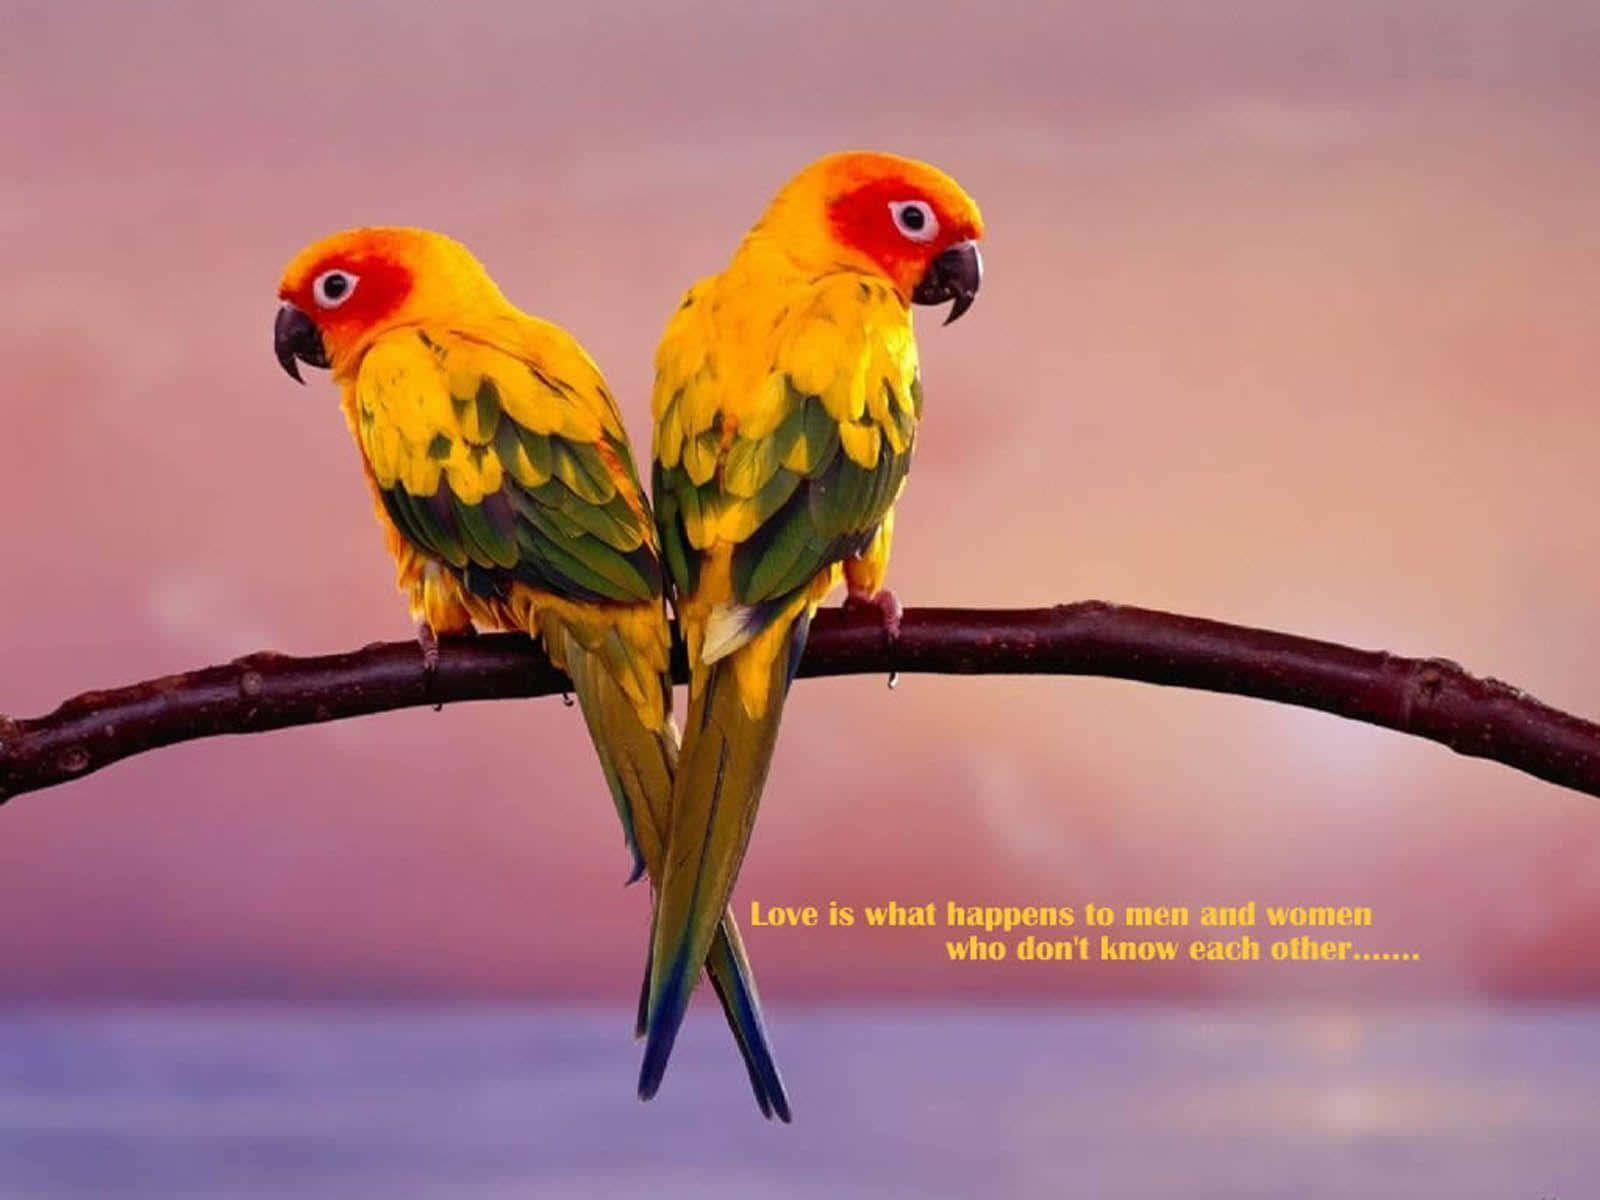 Pájarosdel Amor En Una Rama Con Una Imagen De Cita